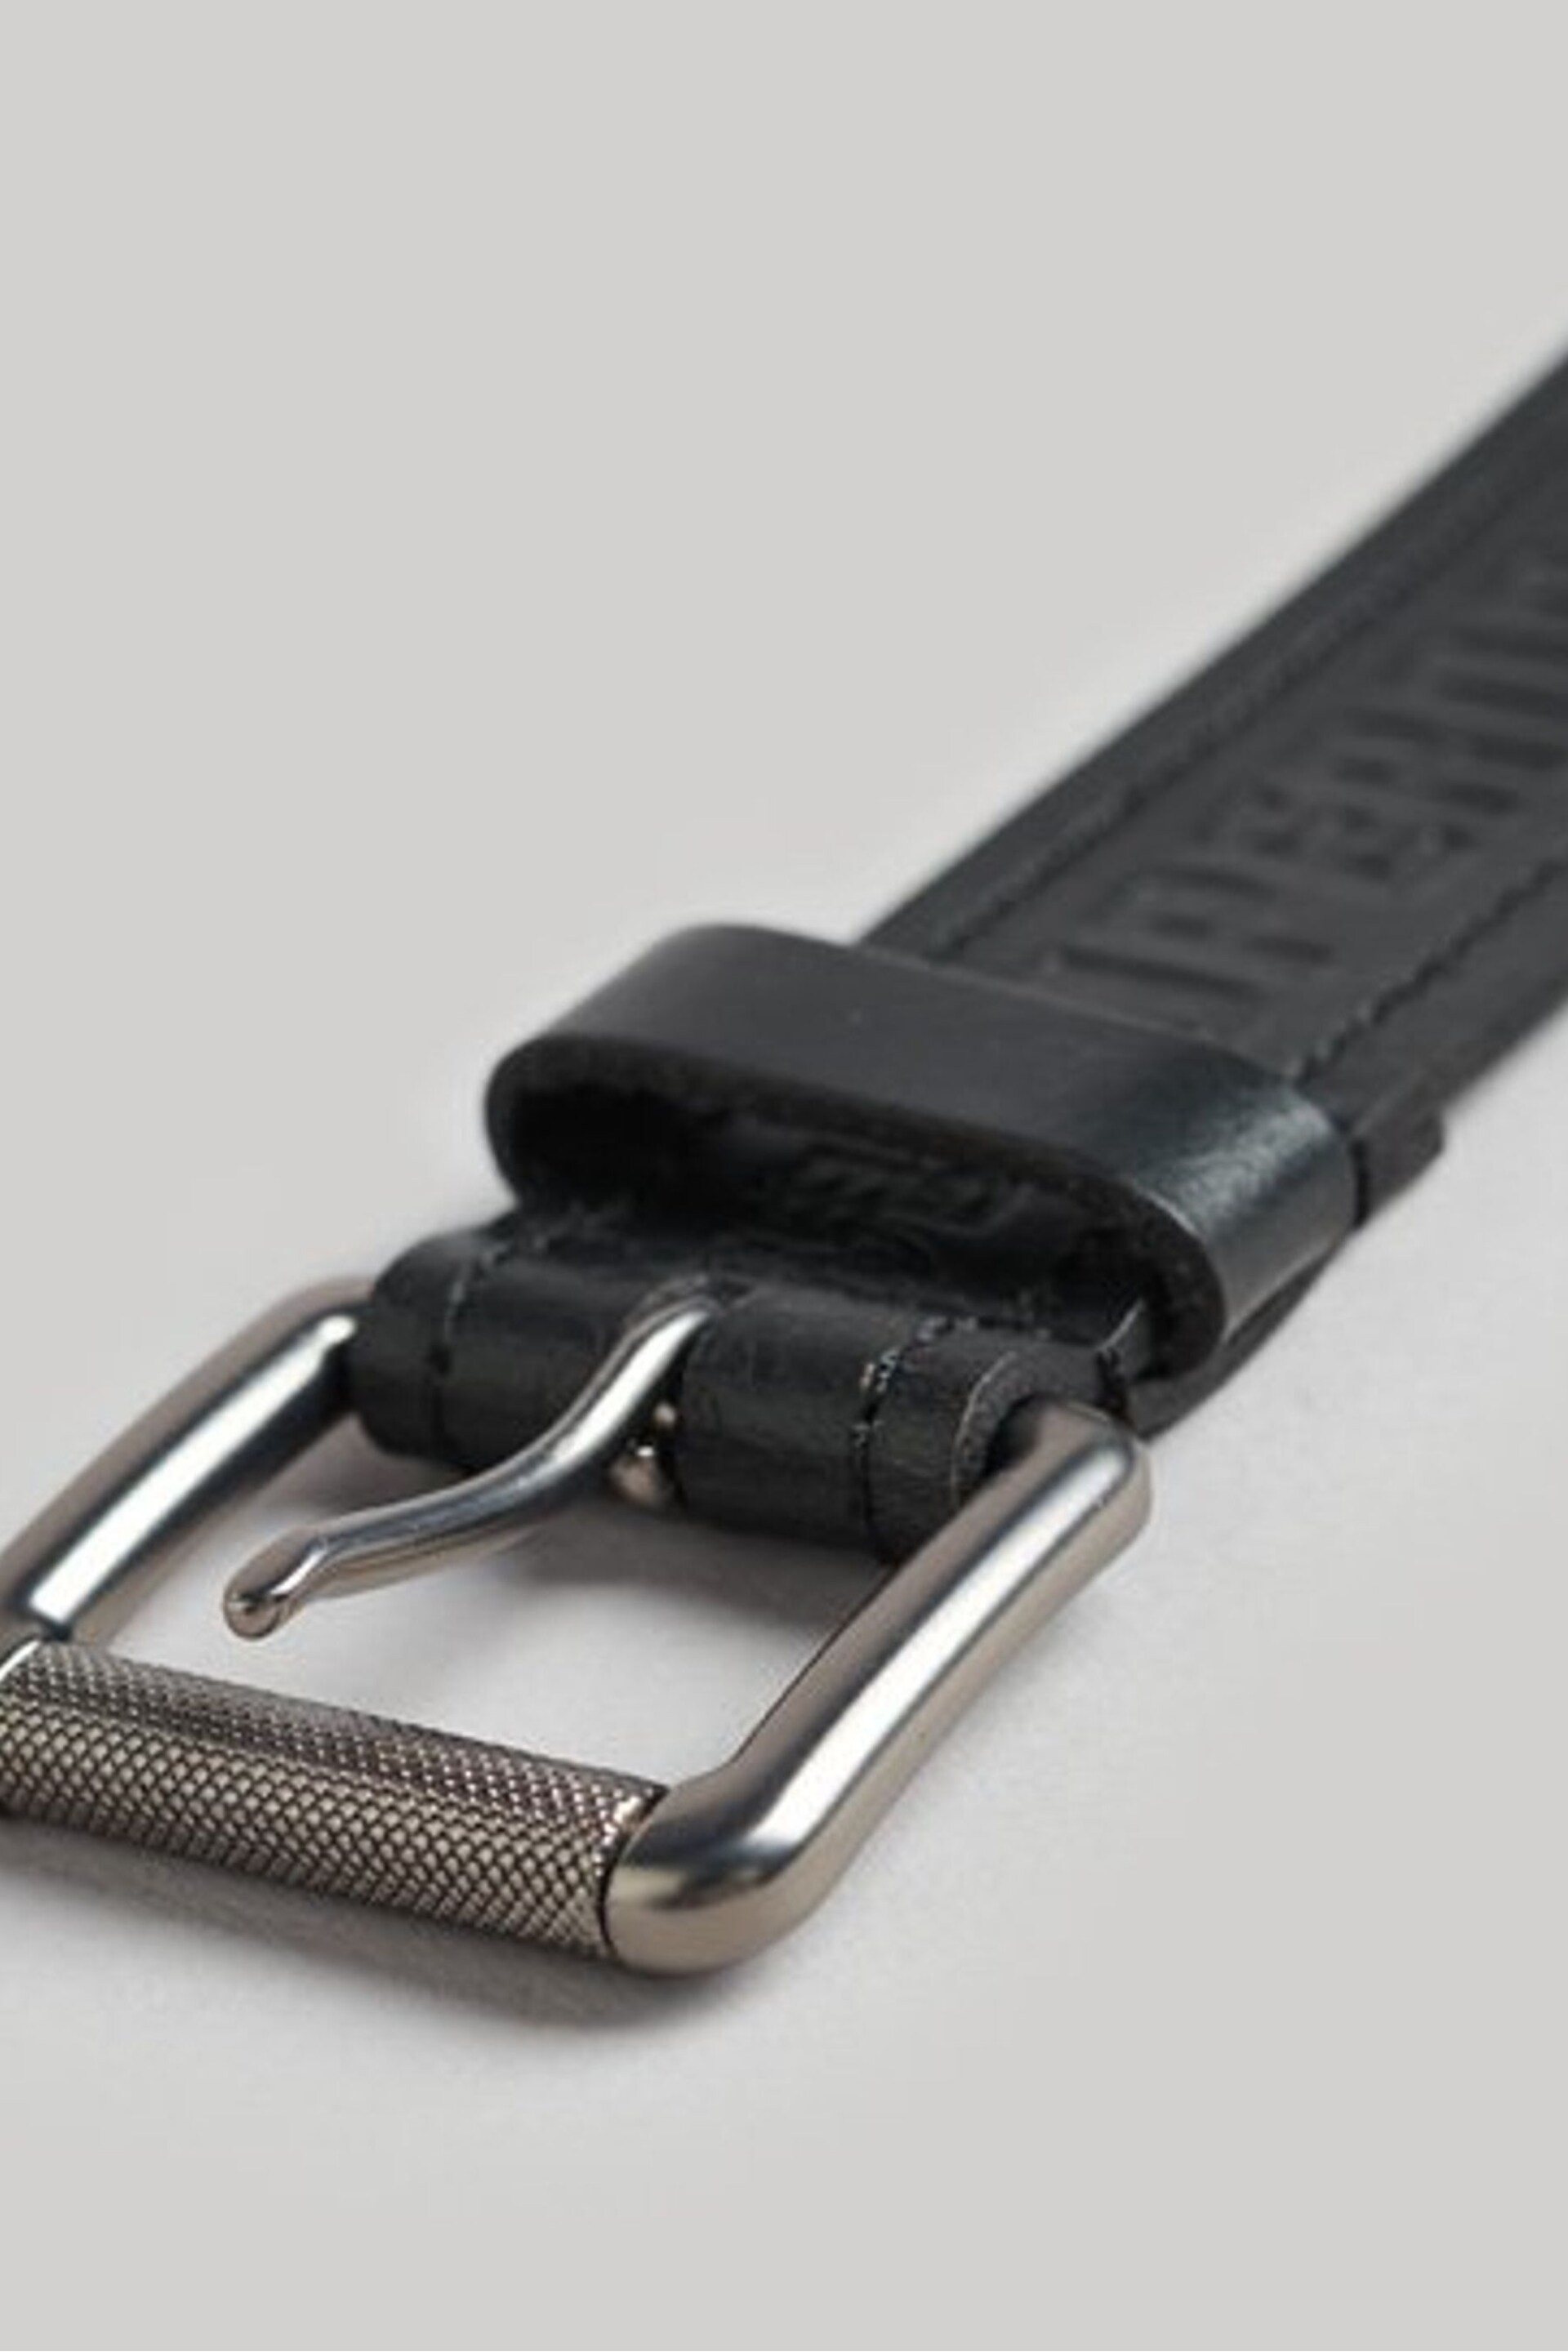 Superdry Dark Black Vintage Branded Belt - Image 3 of 4